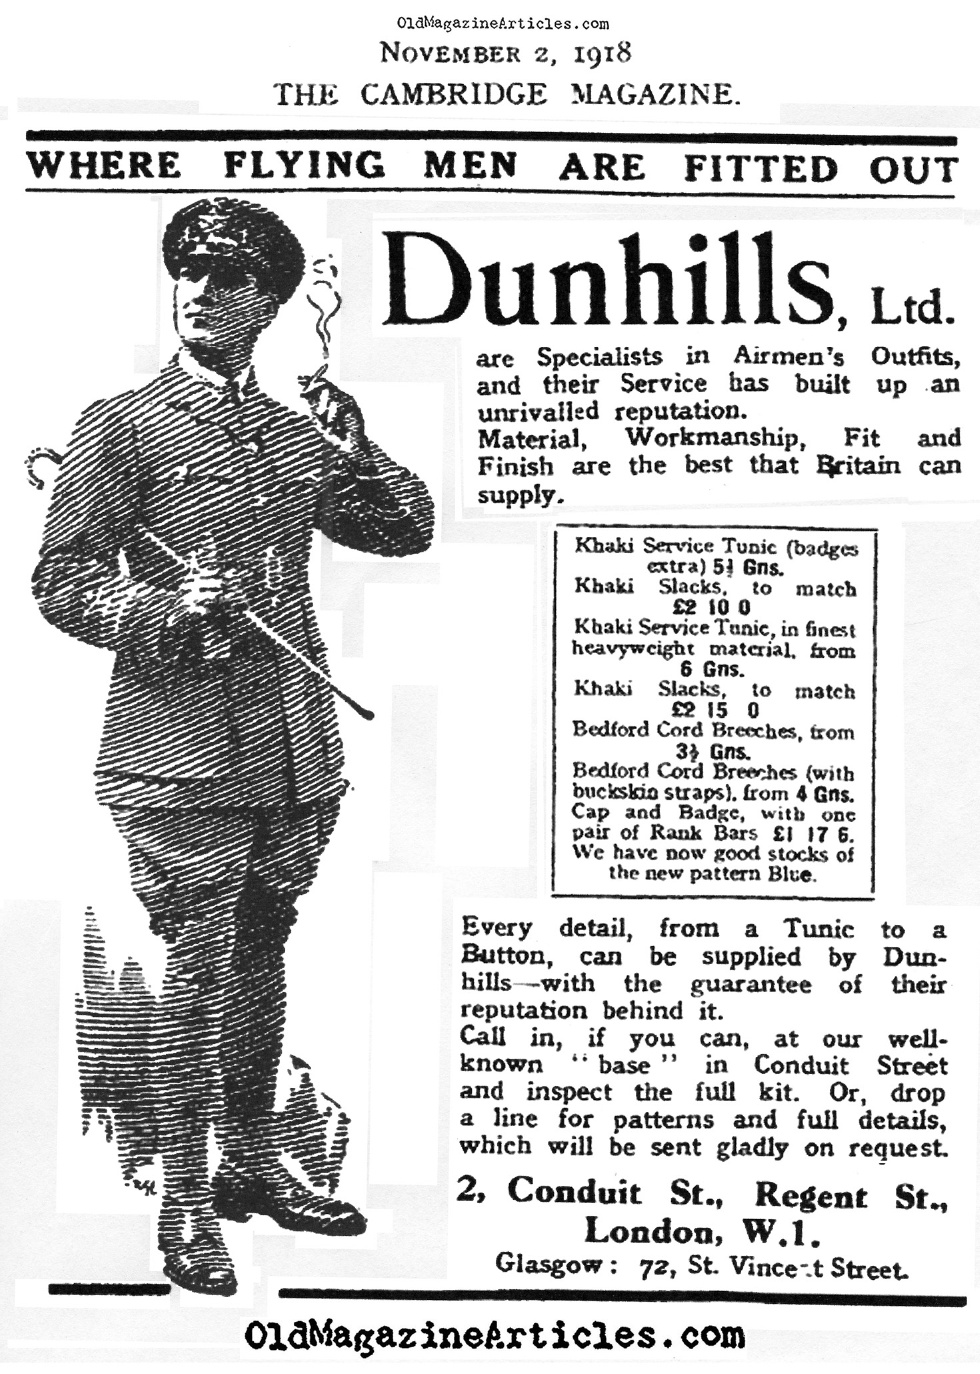 Custom-Tailored Uniform Ad (Cambridge Magazine, 1918)